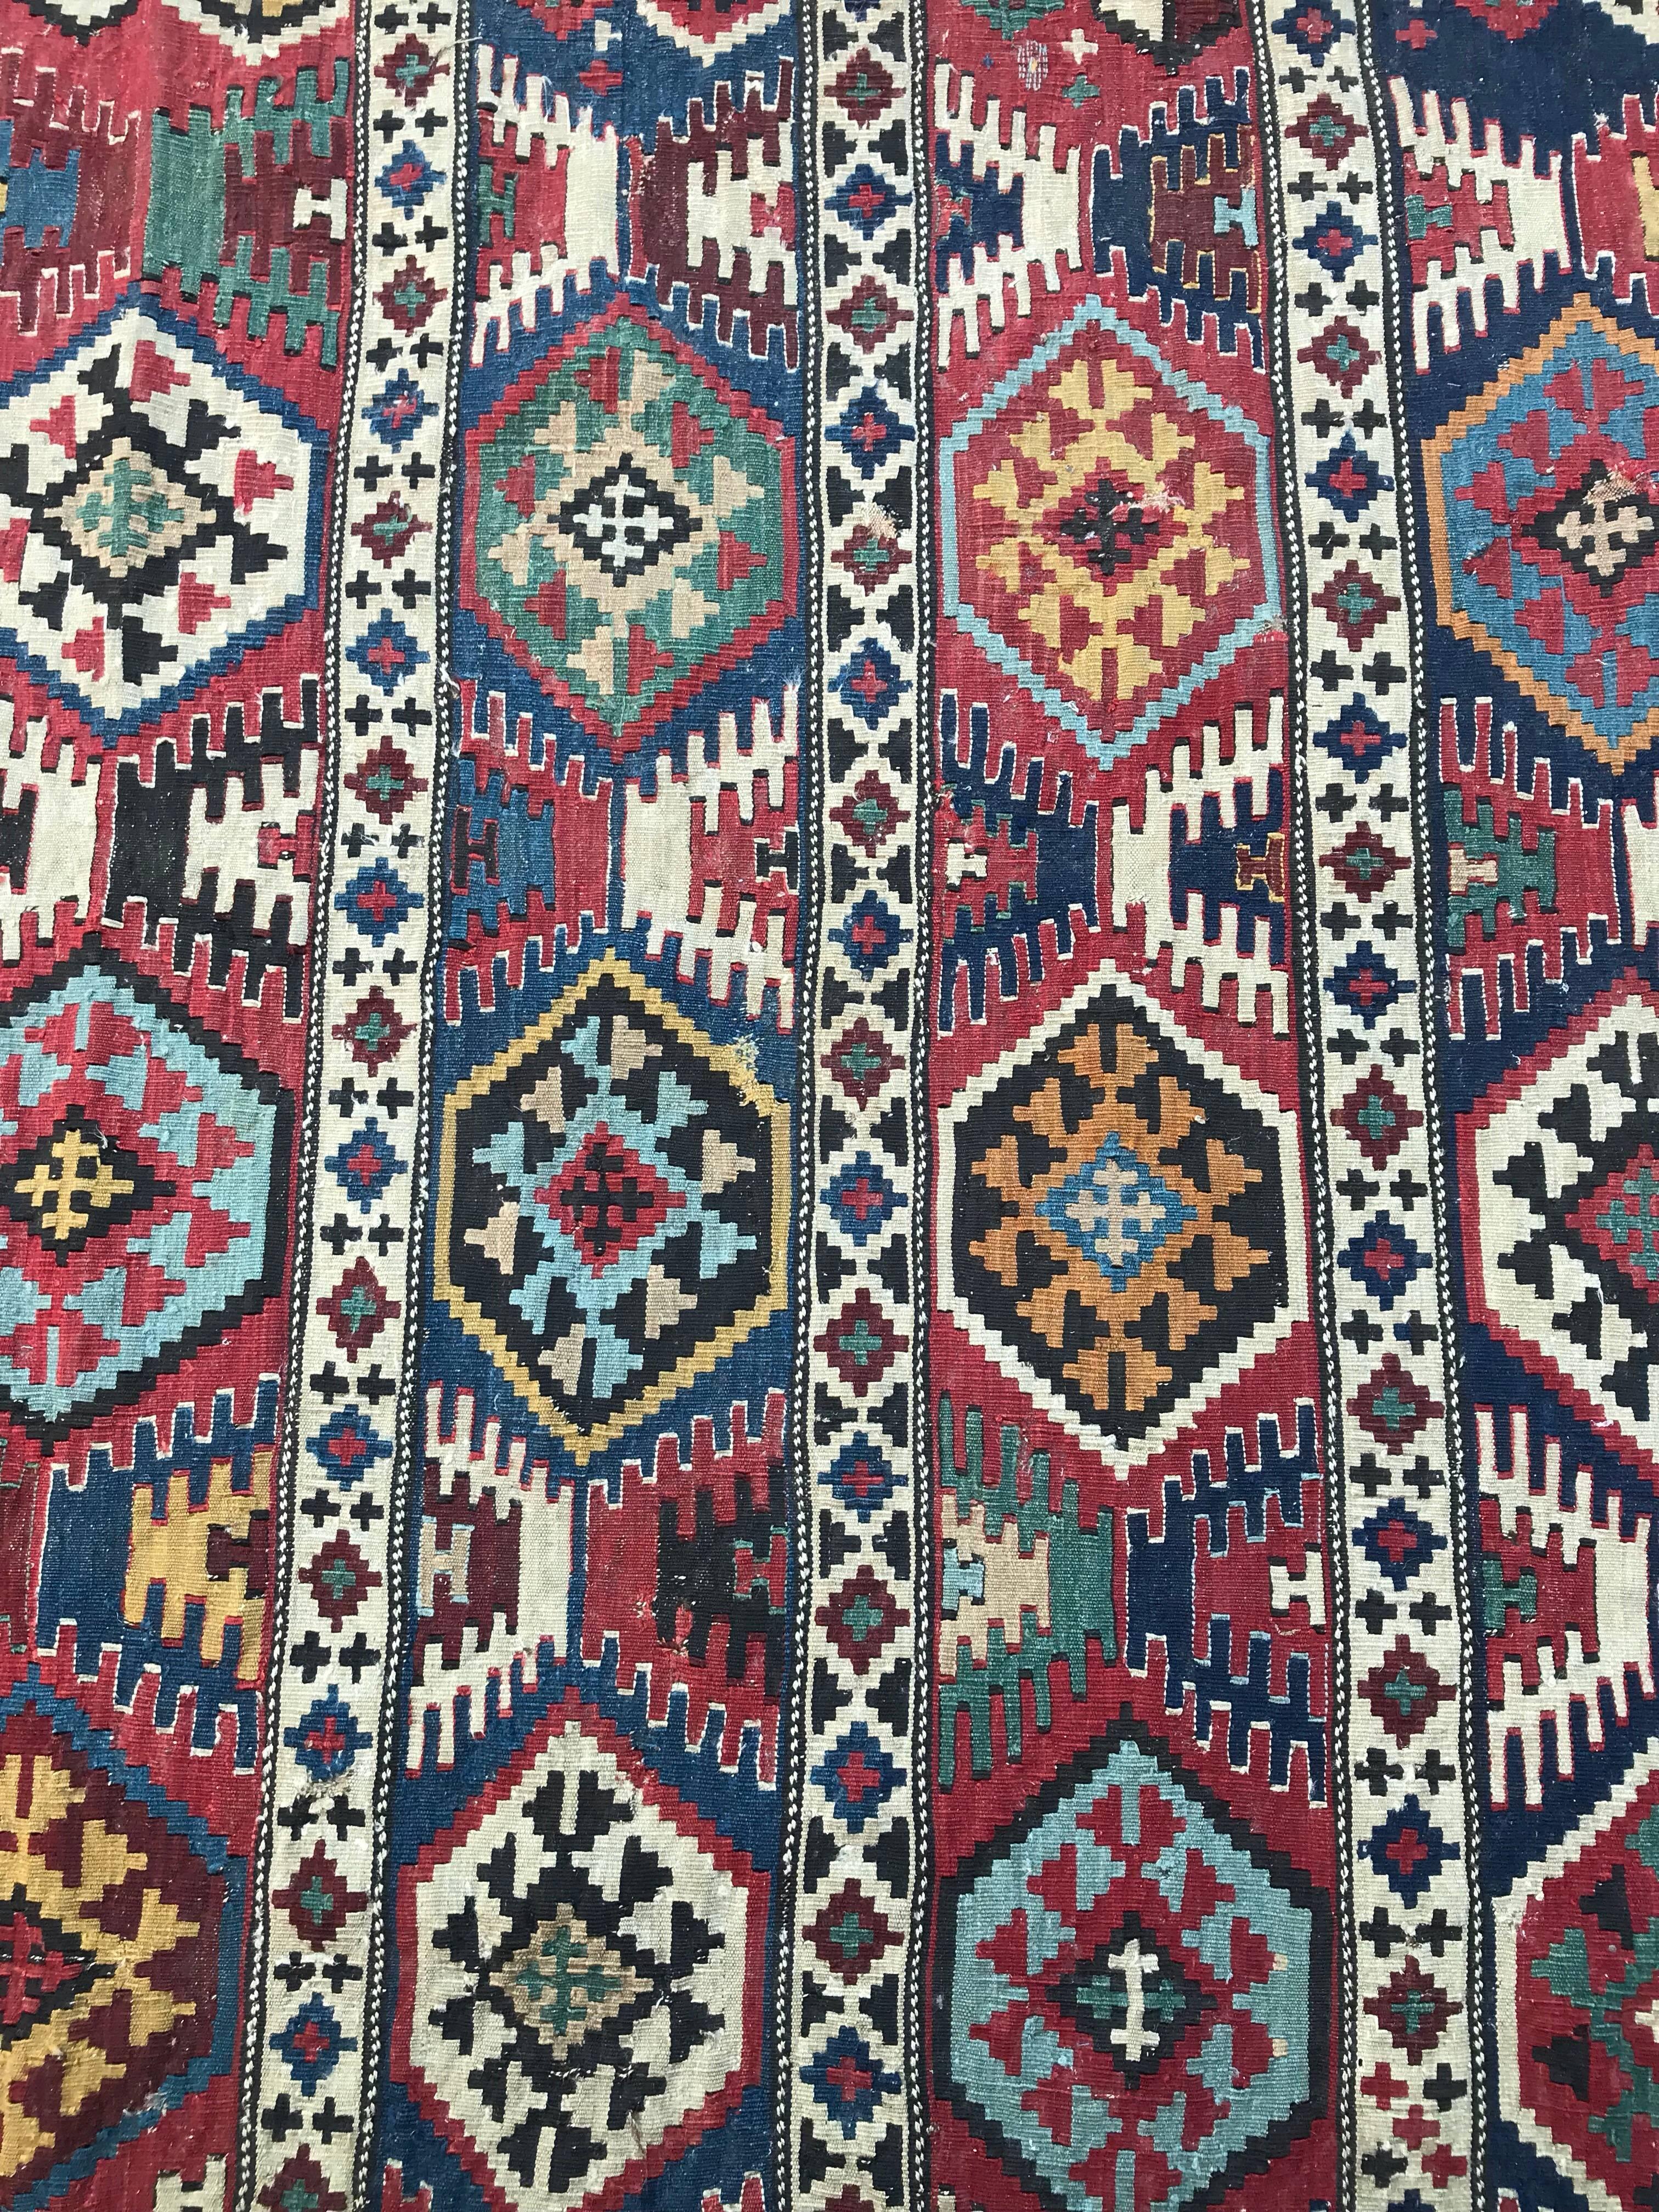 Sehr schöner antiker Kelim aus dem Kaukasus mit schönen natürlichen Farben mit blau-grün, orange und rot, und geometrischem Stammesmuster. Ein Sammlerstück, vollständig handgewebt mit Wolle auf Wollbasis.

✨✨✨
